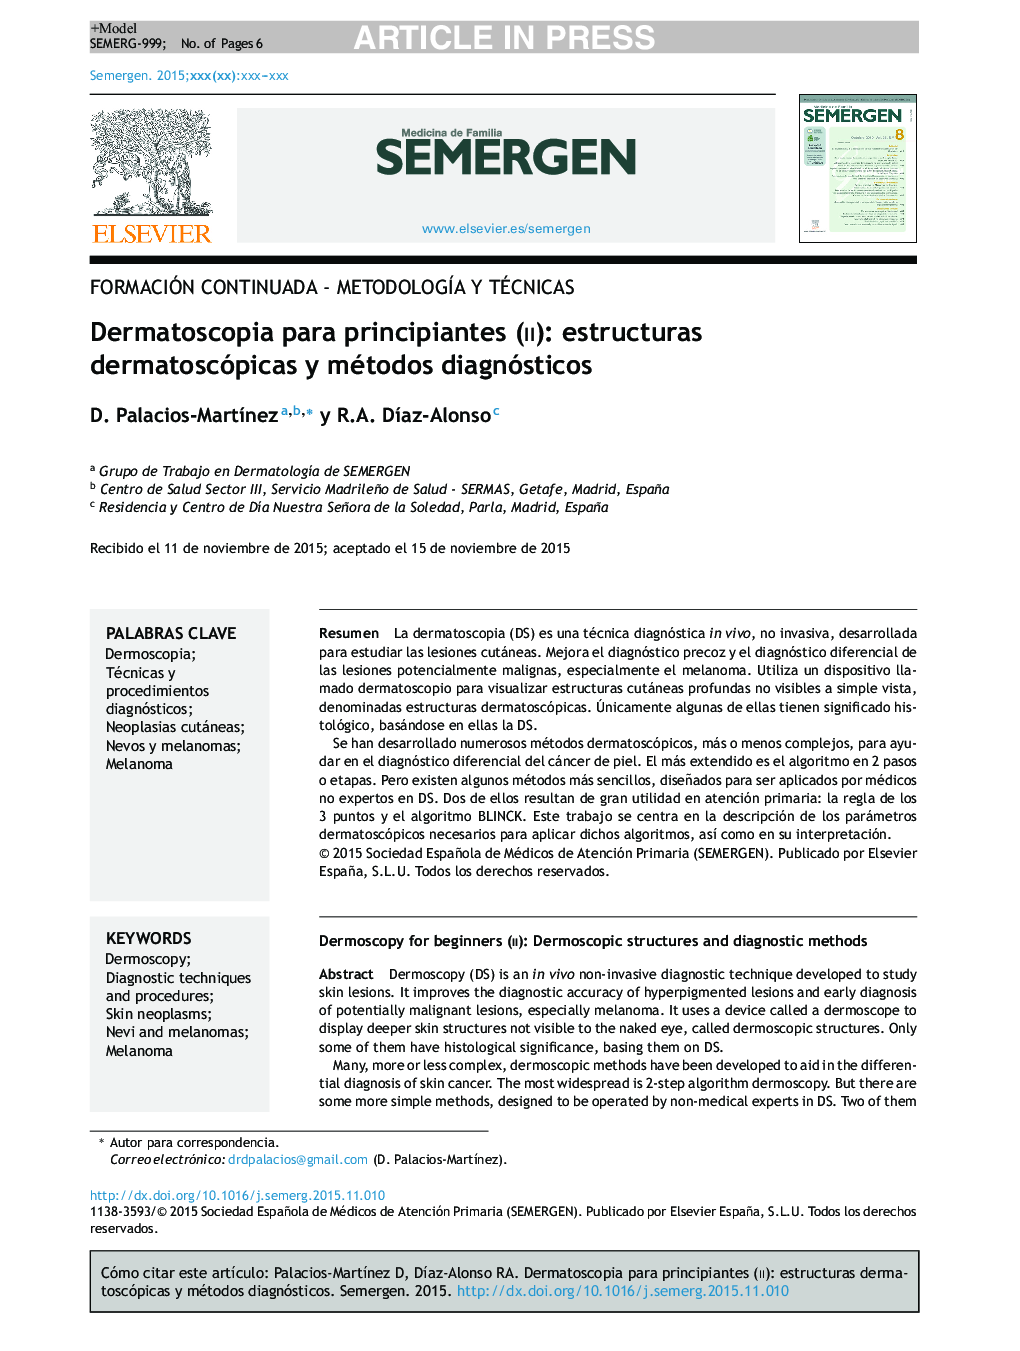 Dermatoscopia para principiantes (ii): estructuras dermatoscópicas y métodos diagnósticos